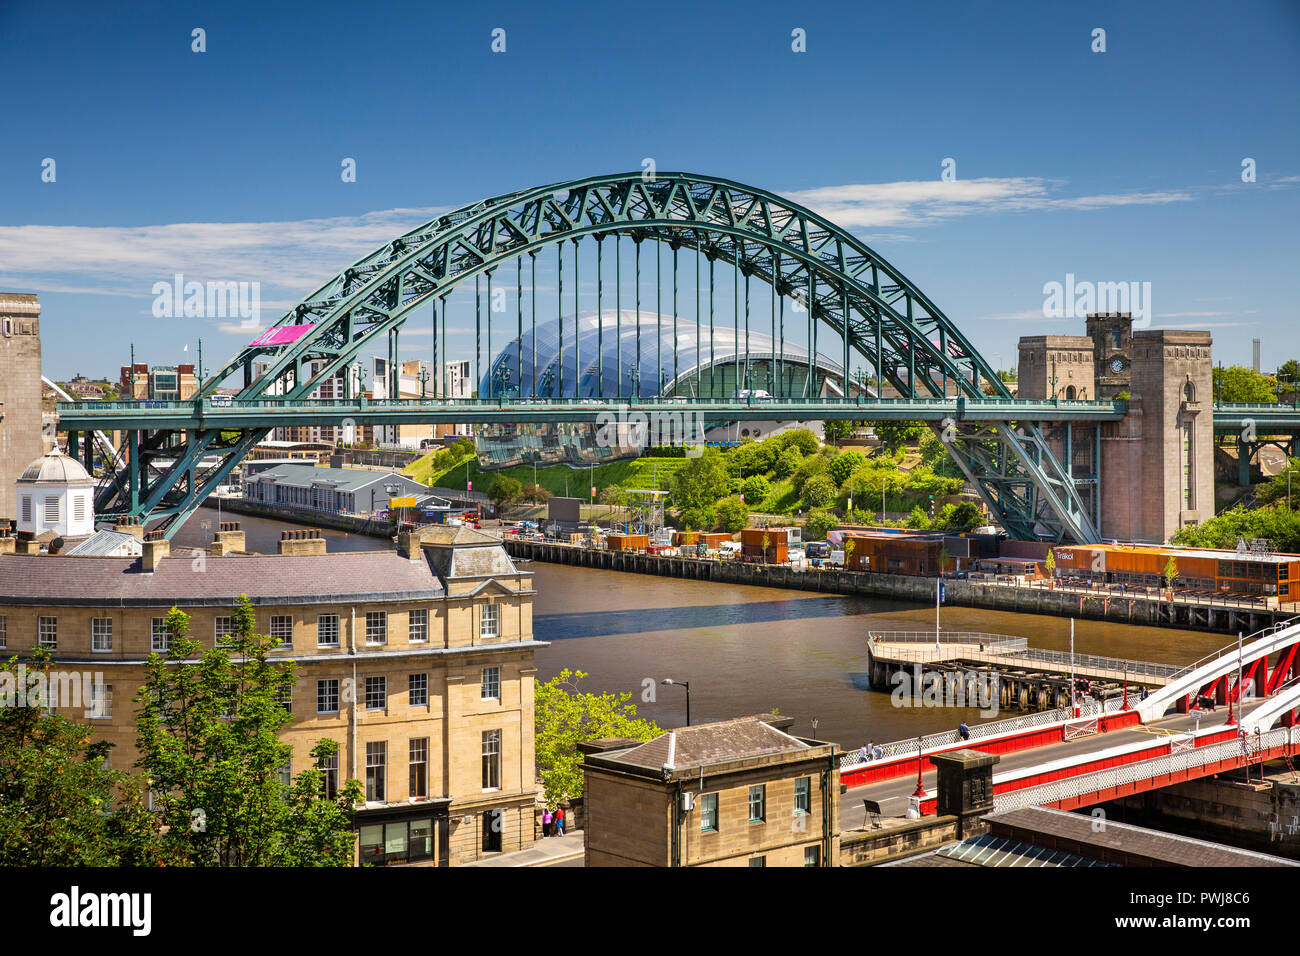 Reino Unido, Inglaterra, Tyneside, Newcastle upon Tyne Tyne Bridge y Sage Centro elevado, vista desde el puente de alto nivel Foto de stock